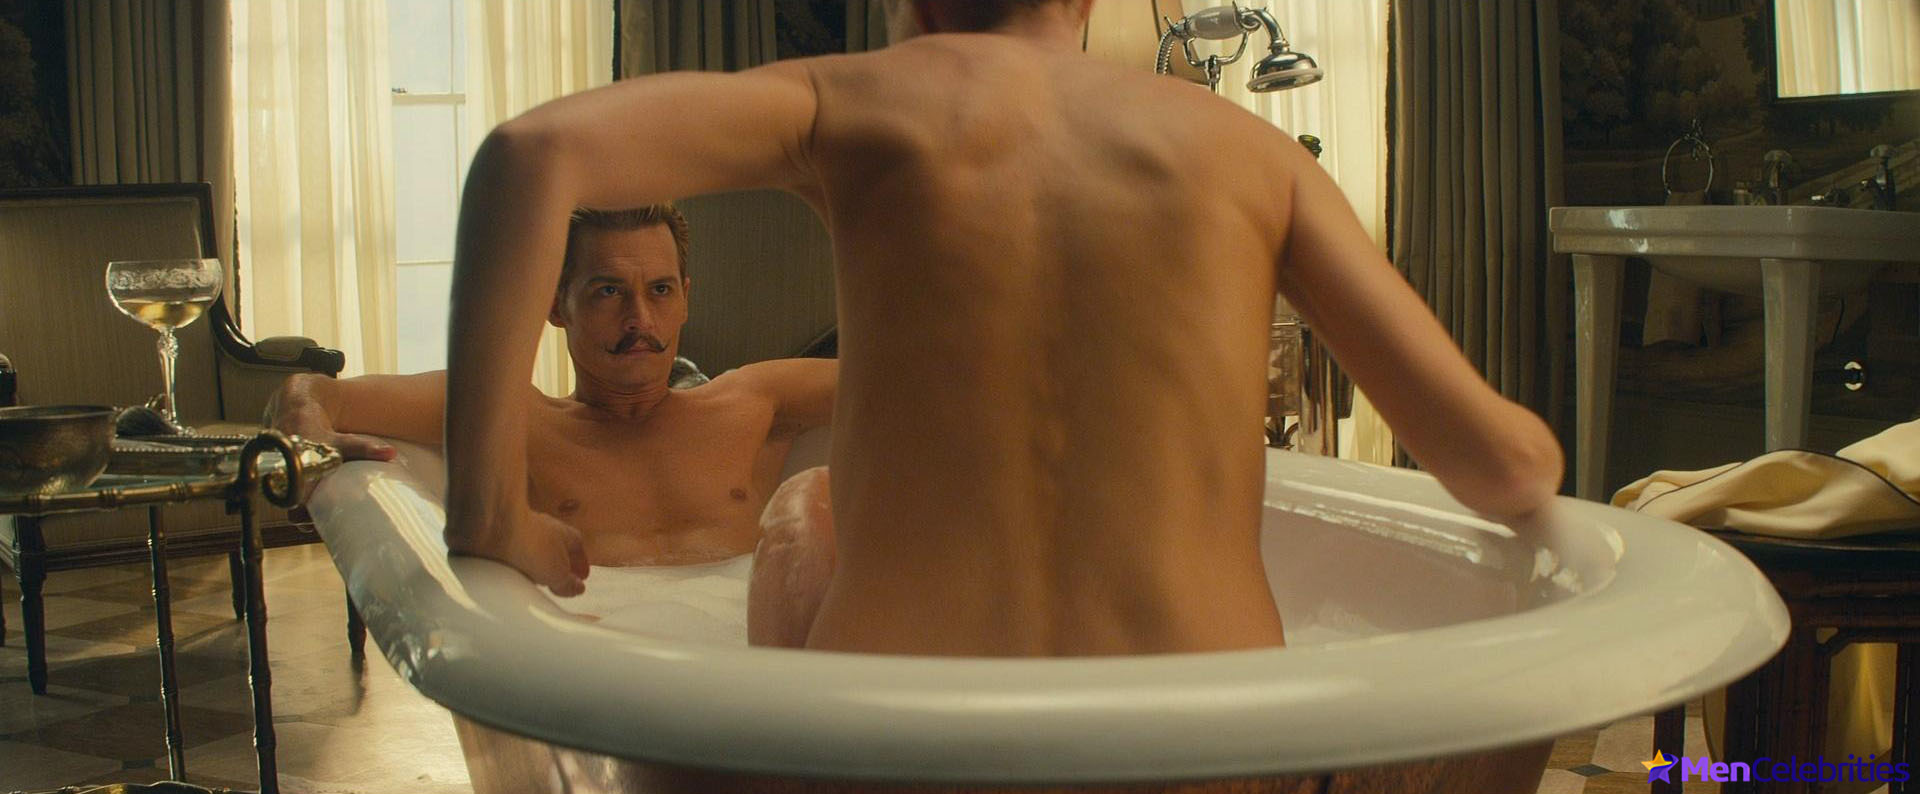 Johnny Depp nude movie scenes.